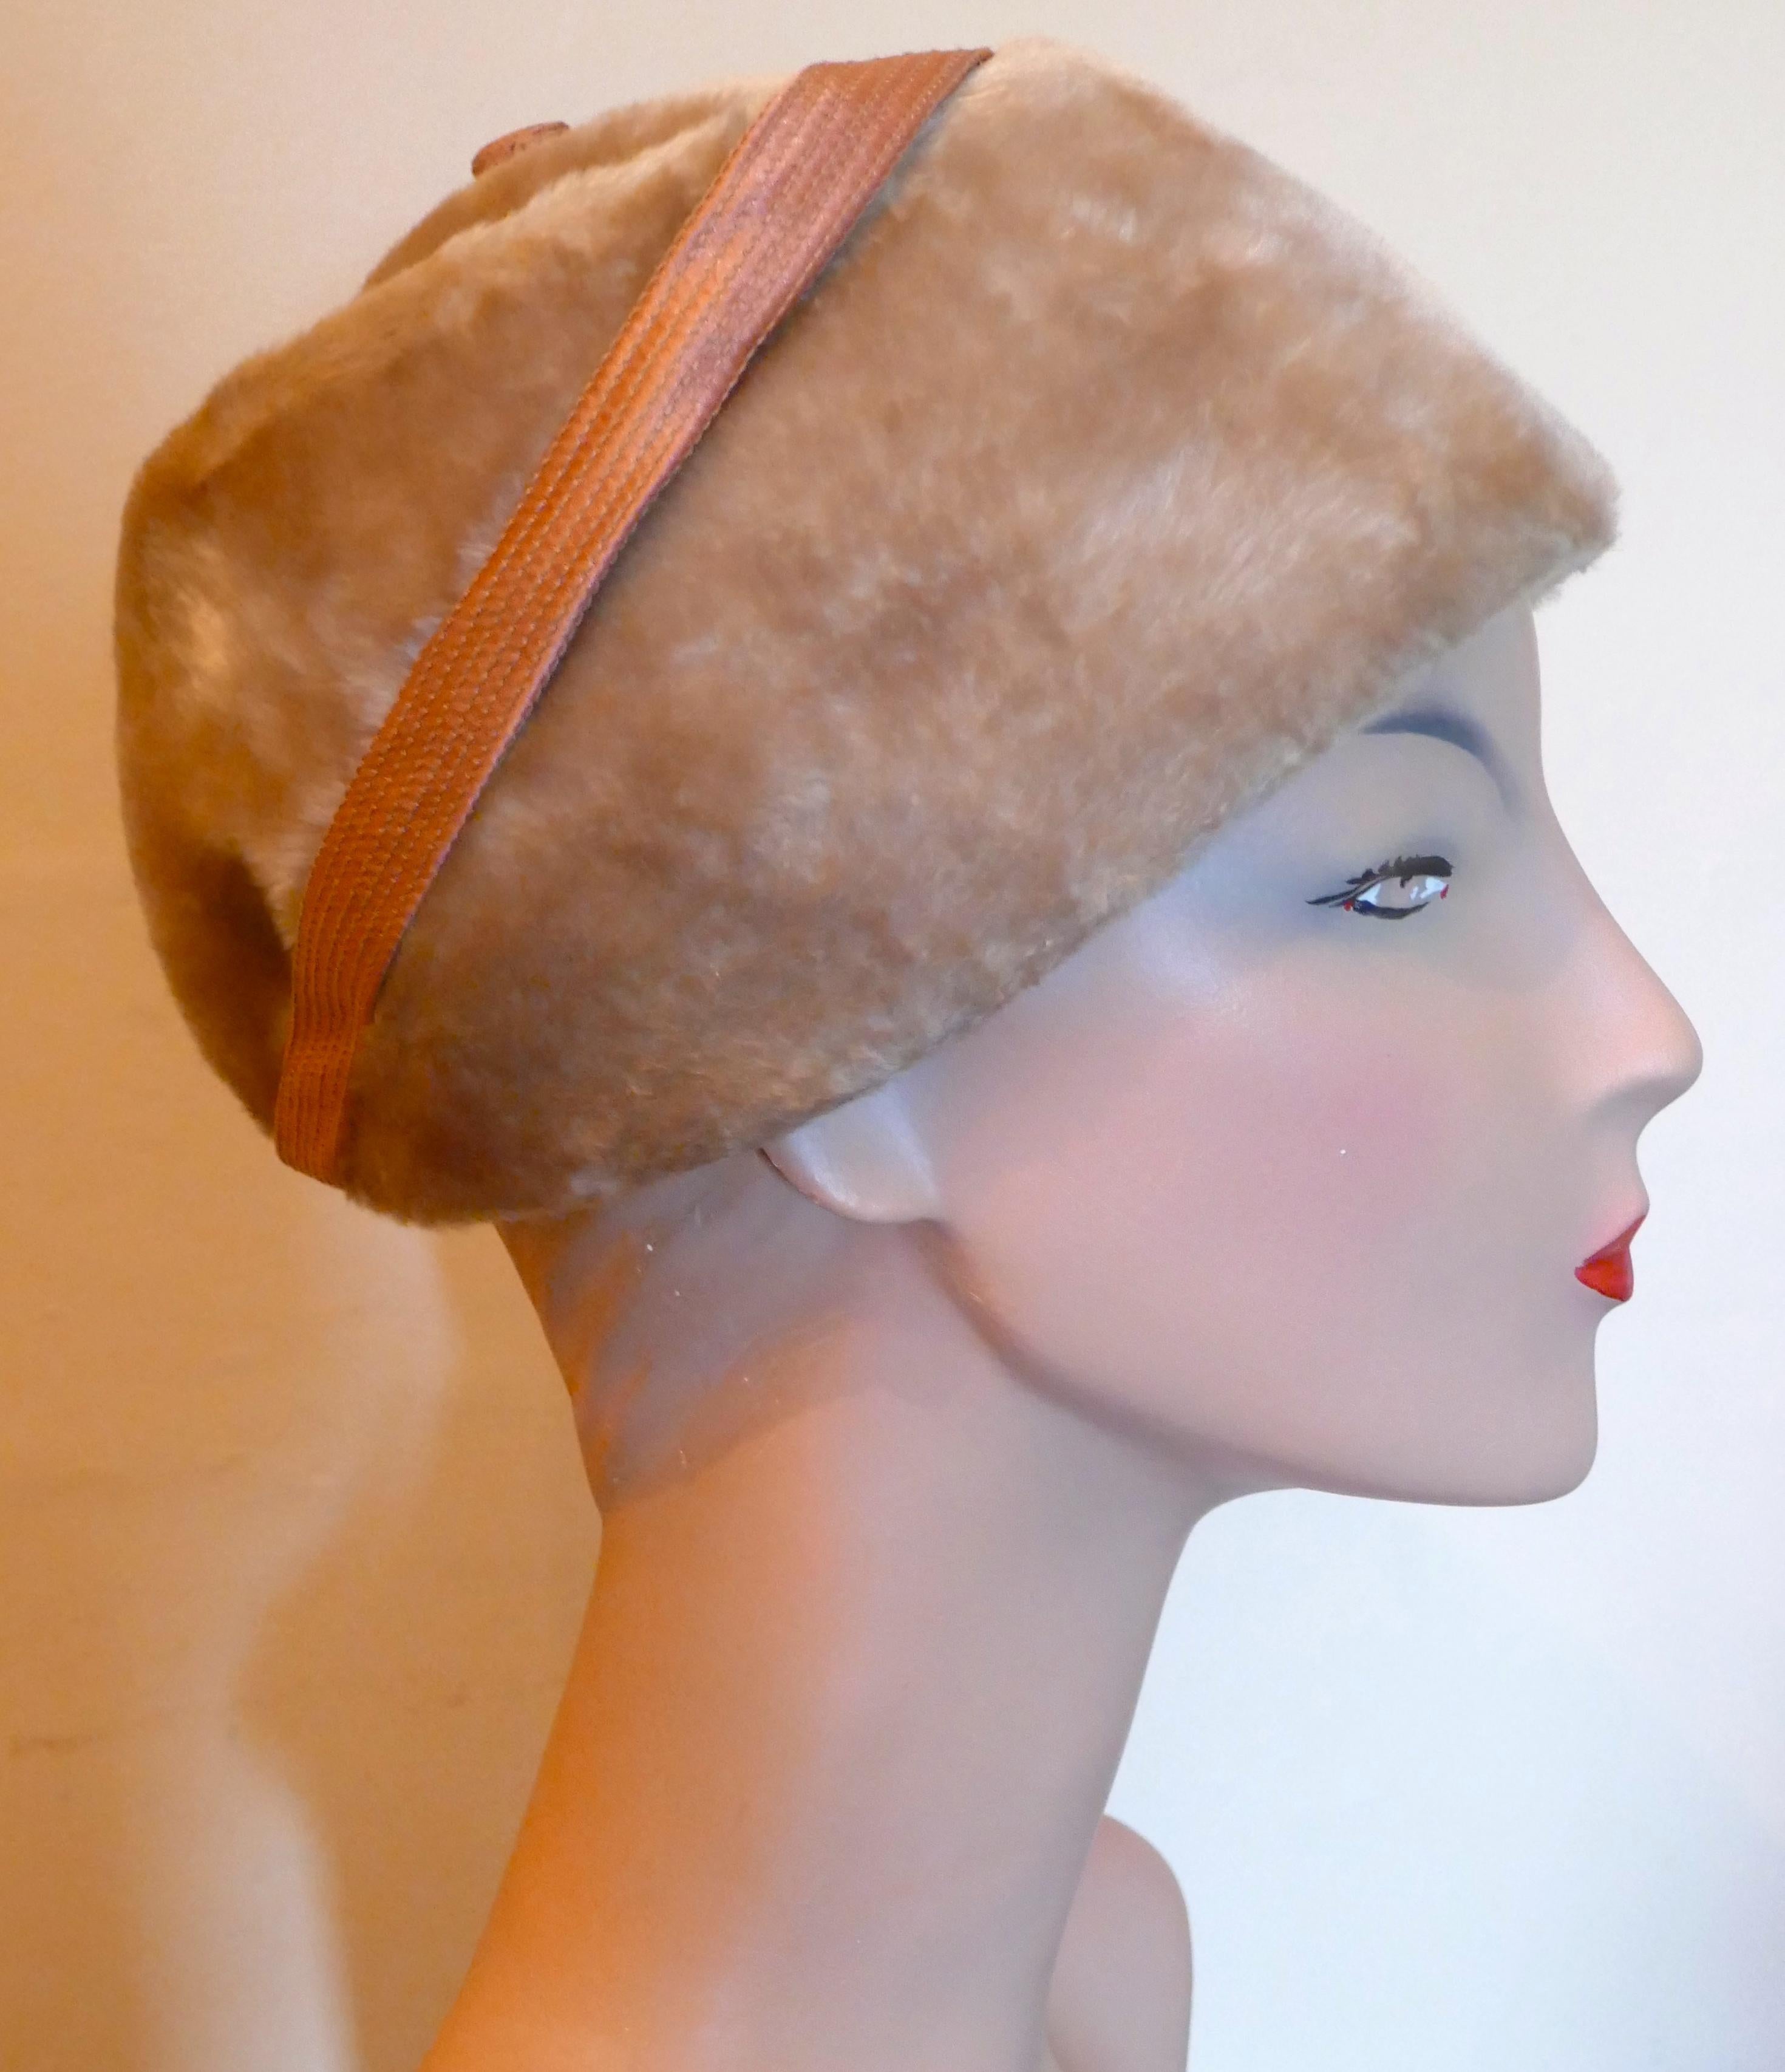 Chapeau de pilulier original en feutre des années 1950, garni d'un ruban de satin 

Ce magnifique chapeau est très léger et a une forme attrayante, il est fait en feutre de laine et a une belle sensation de fourrure douce
Celui-ci est d'un design